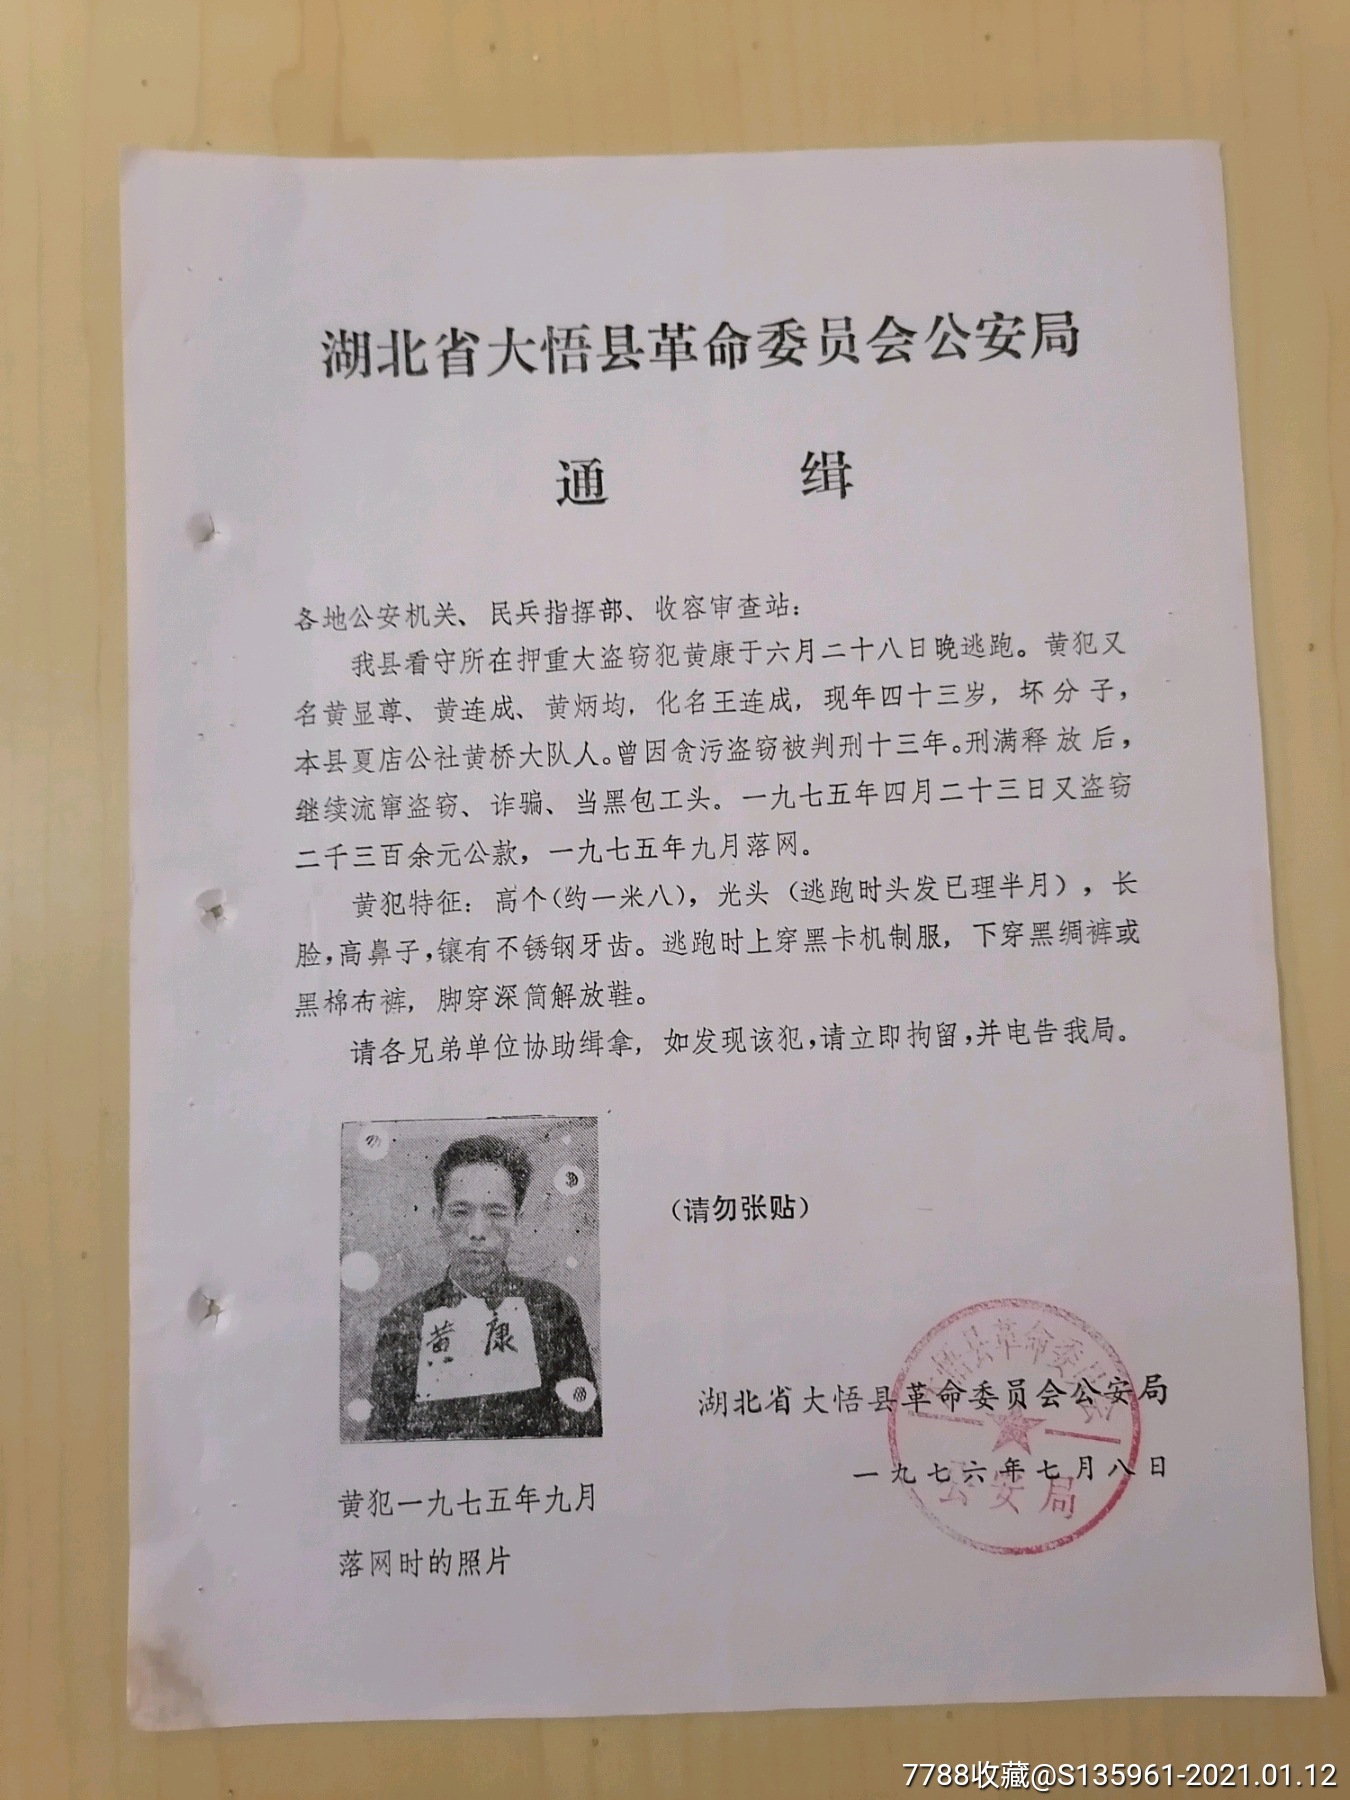 1976年大悟县革命委员会安局通缉令重大盗窃犯逃跑